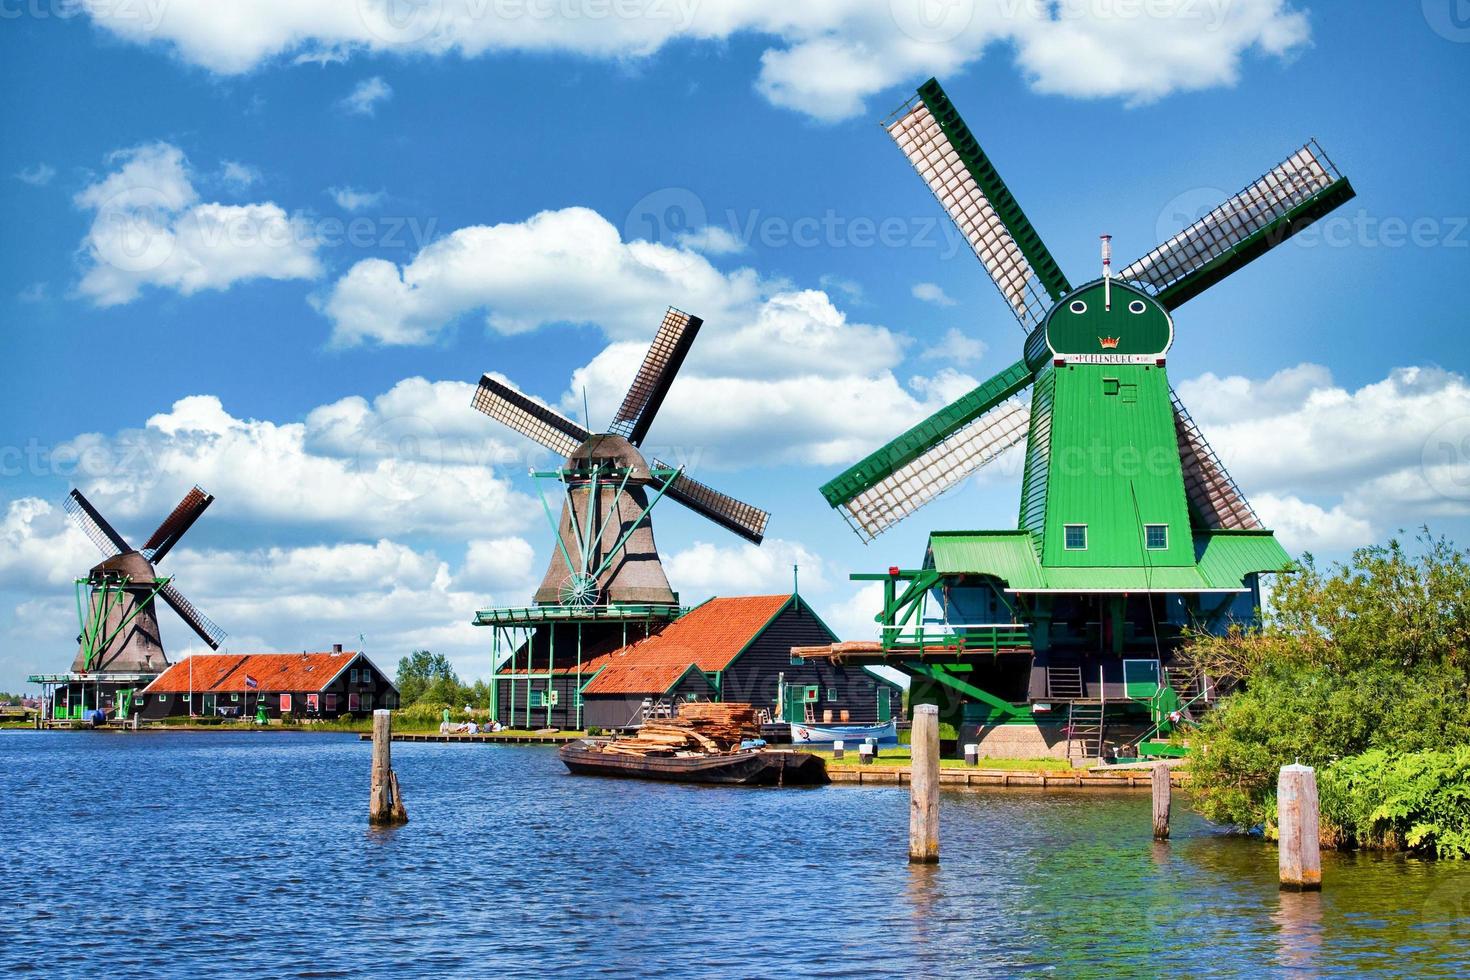 Nederlandse windmolen op het groene platteland in de buurt van amsterdam, nederland, met blauwe lucht en rivierwater. foto